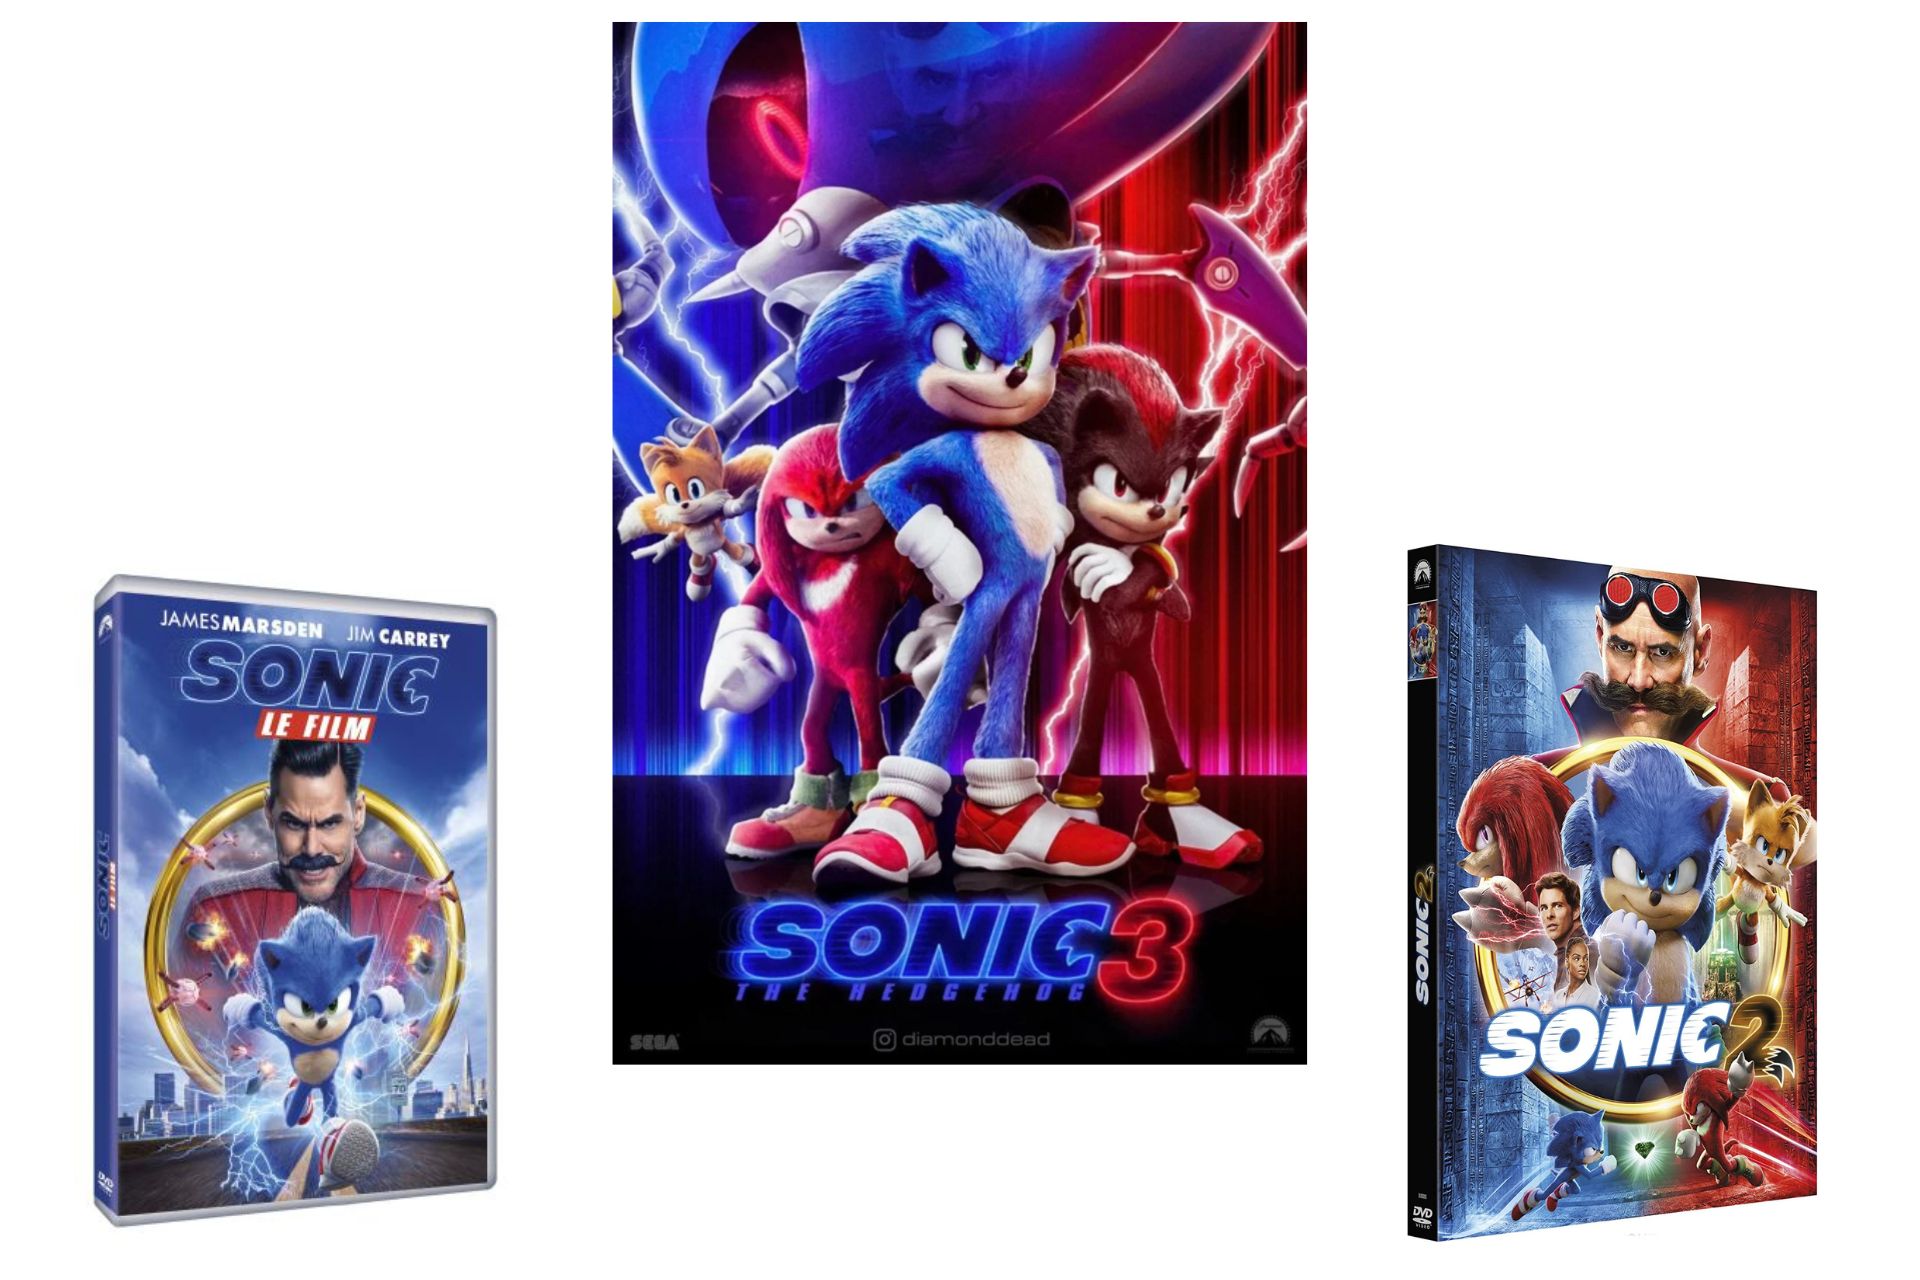 Les affiches de Sonic 1, Sonic 2 et Sonic 3